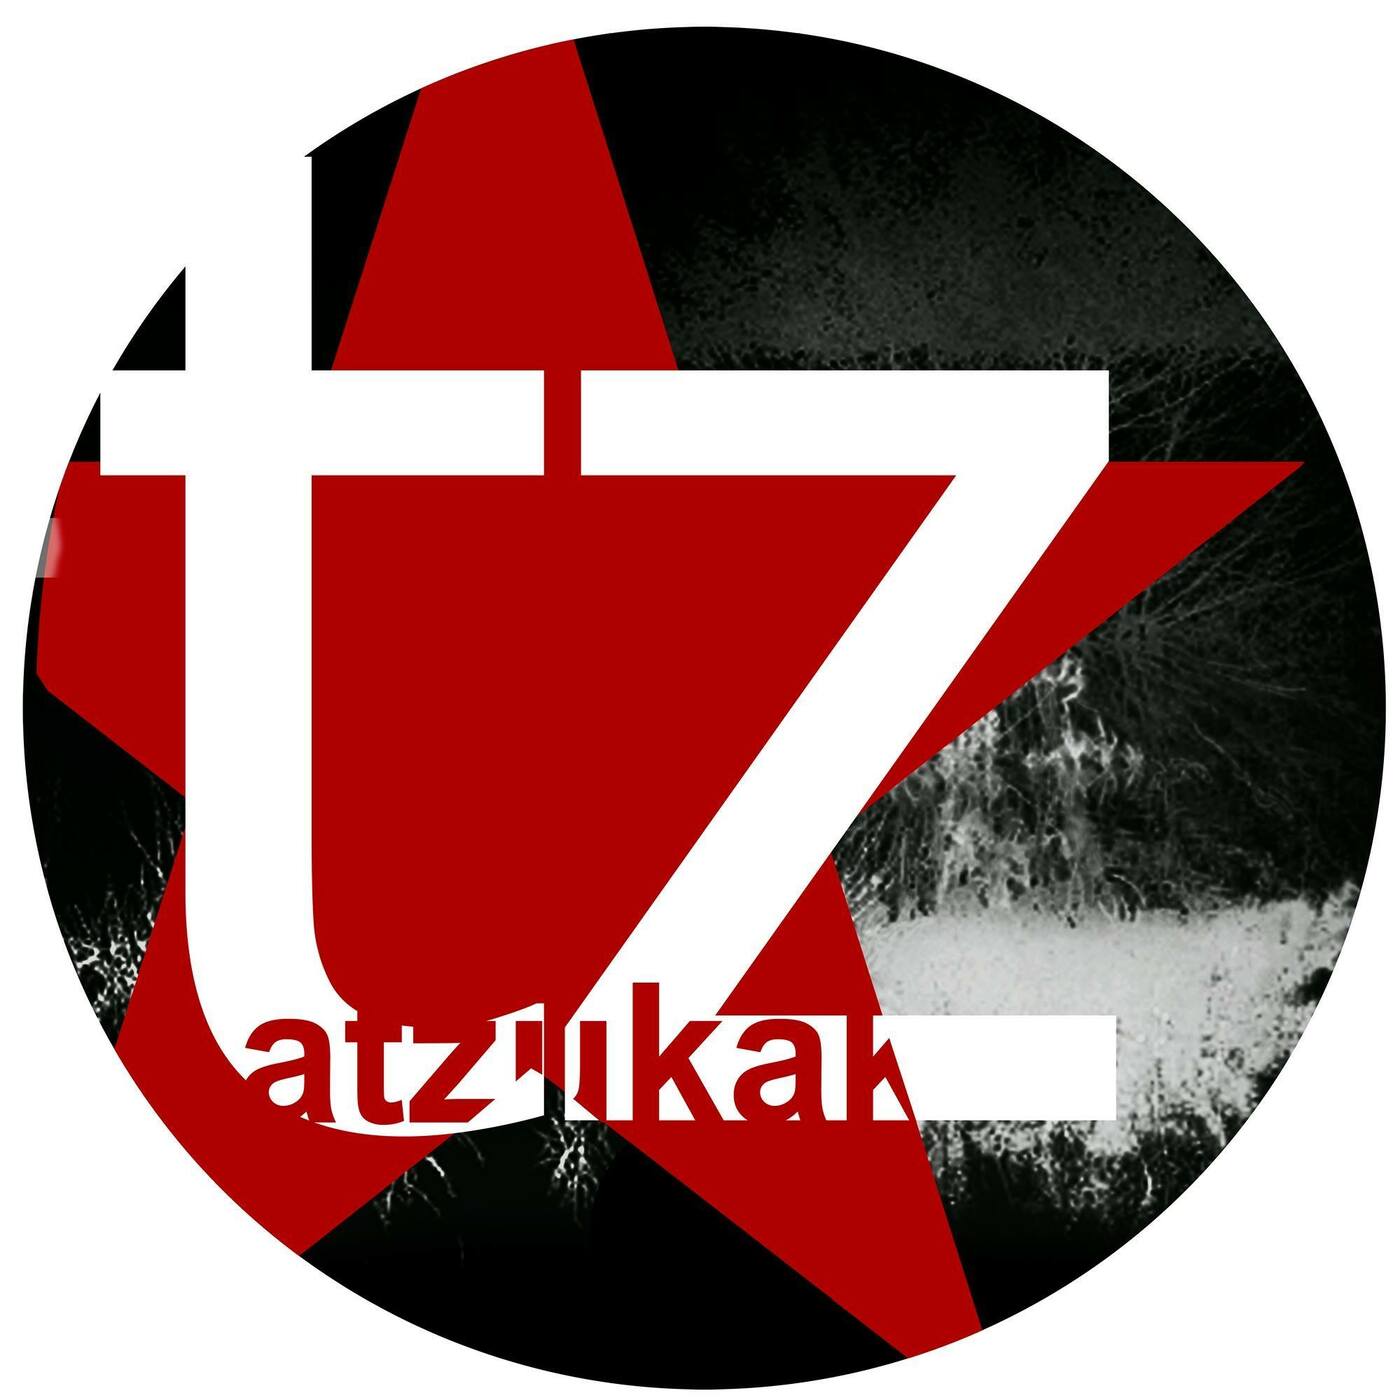 Atzukak | musica en valencià